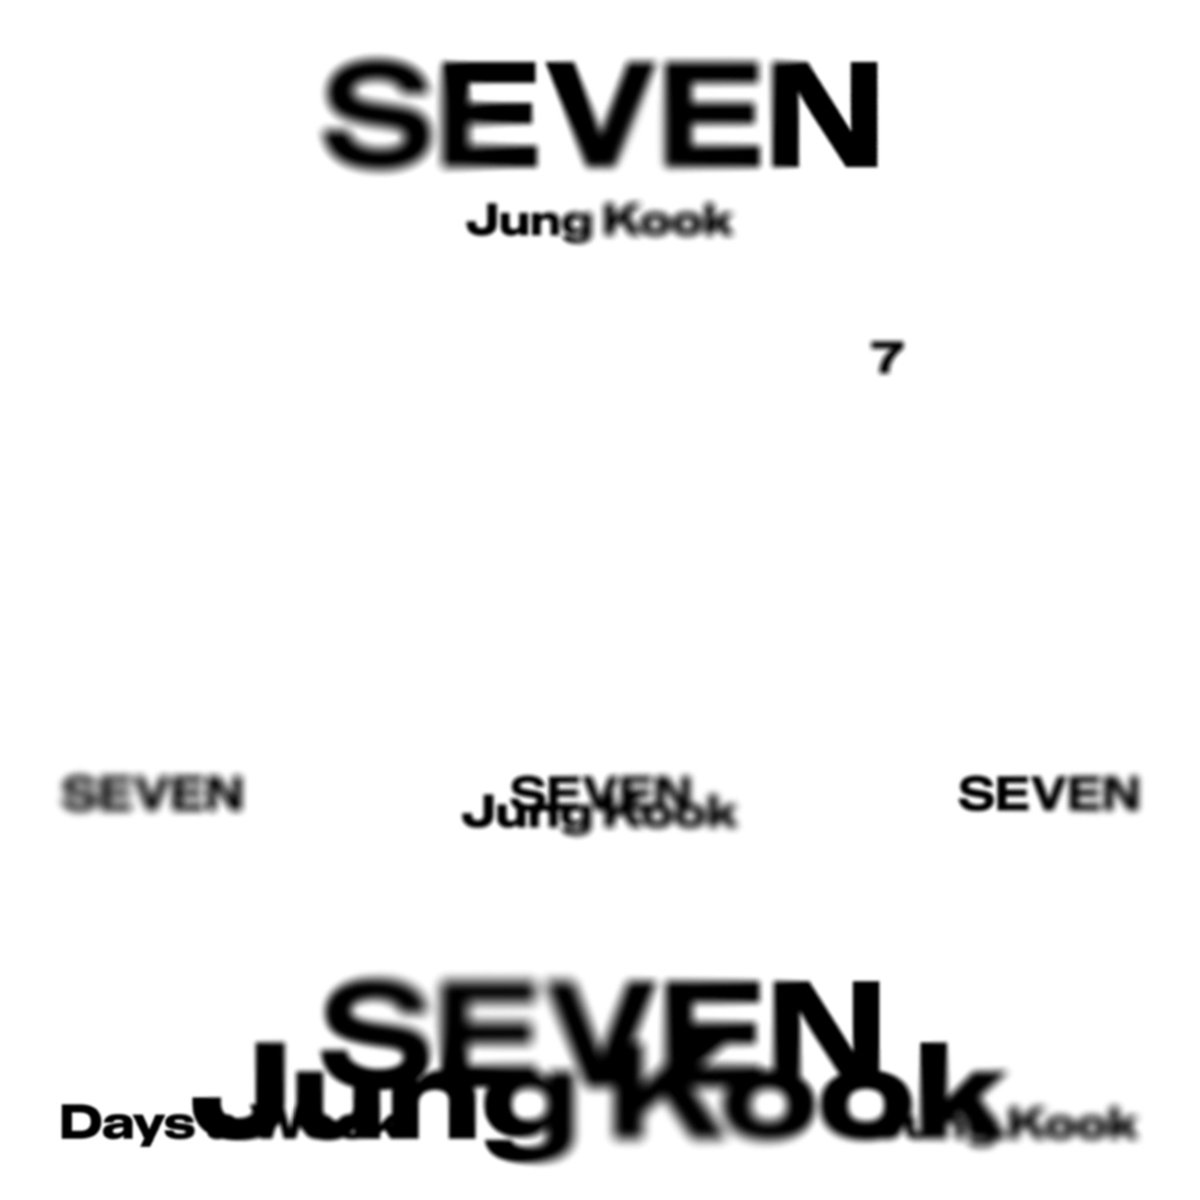 Quien libra el 14 de Julio? La menda lerenda...🥳🥳🥳🥳🥳🥳

JUNGKOOK IS COMING 
SEVEN IS COMING 
#JUNGKOOK #SEVEN
#SEVENbyJUNGKOOK
#JungKook #정국 #JungKook_Seven